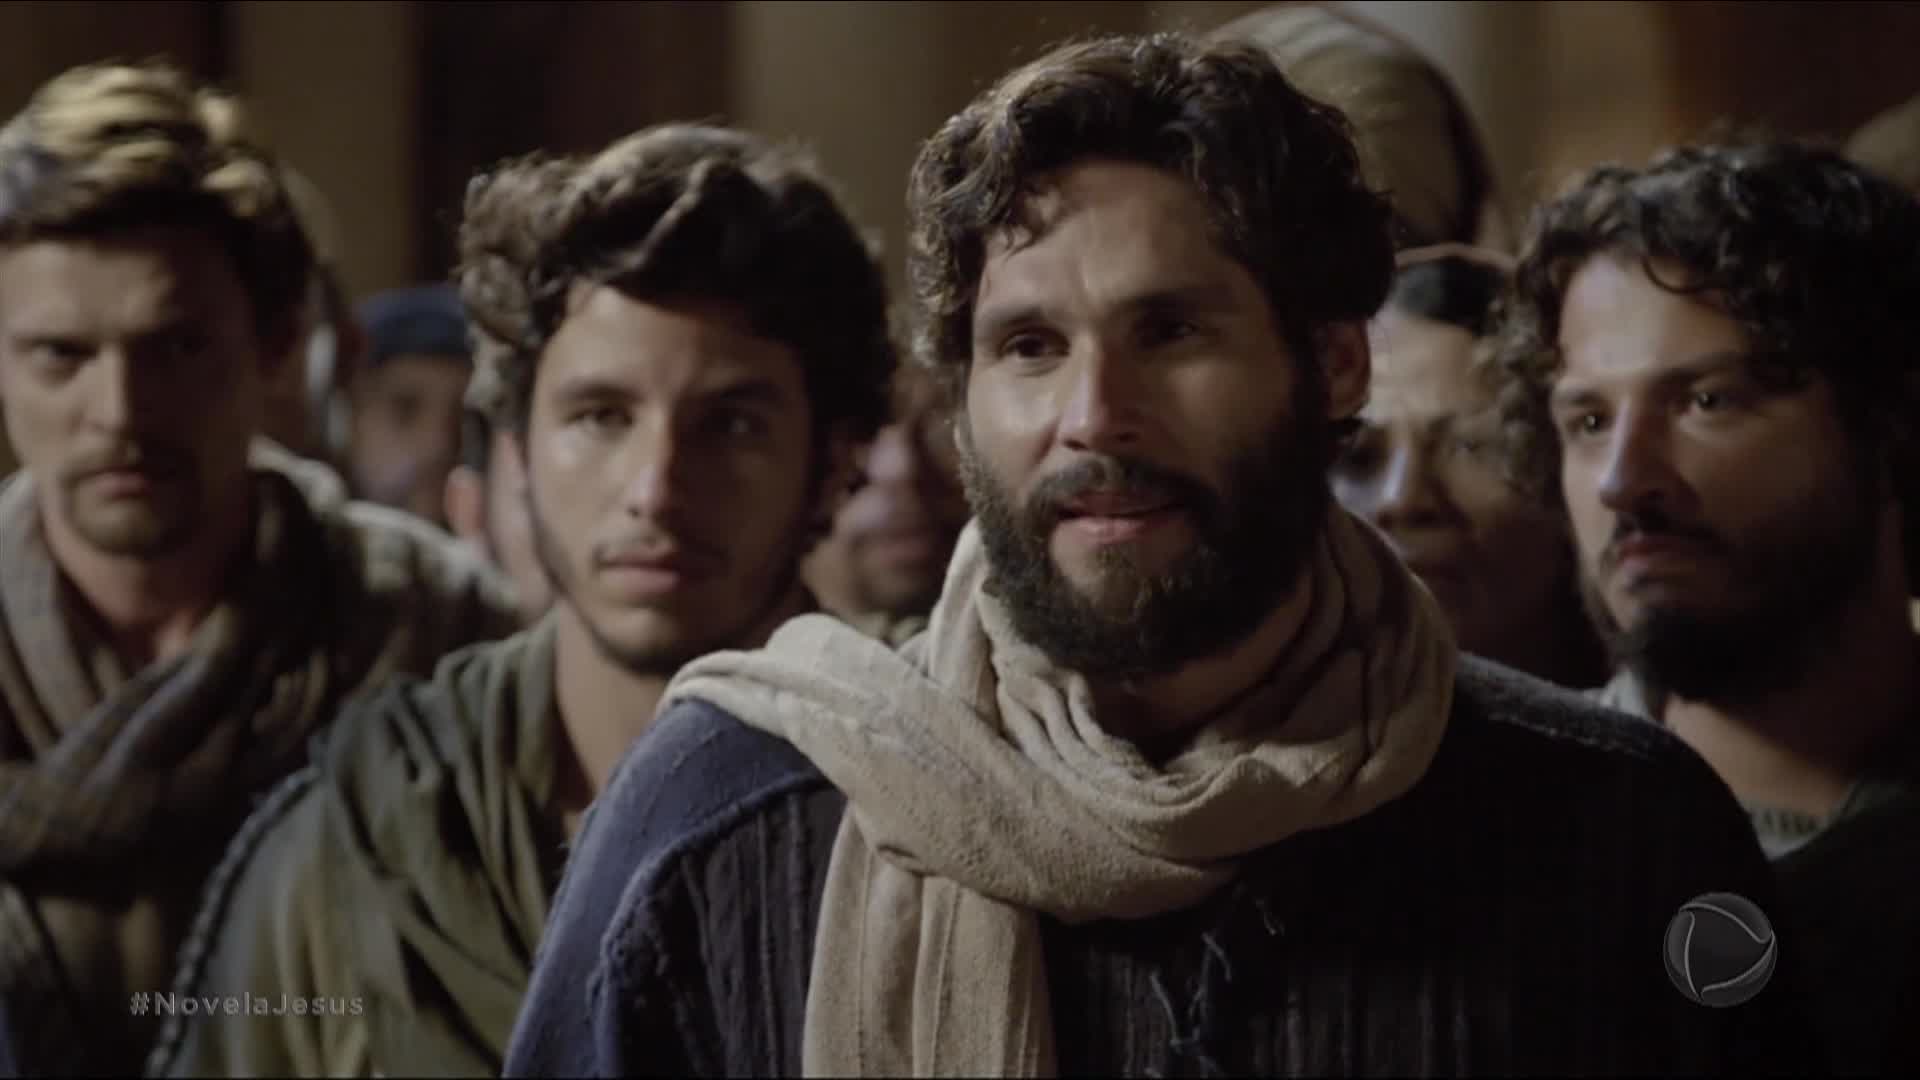 Vídeo: Jesus rebate Caifás: "Não conhece a Mim, nem a Meu Pai" | Jesus